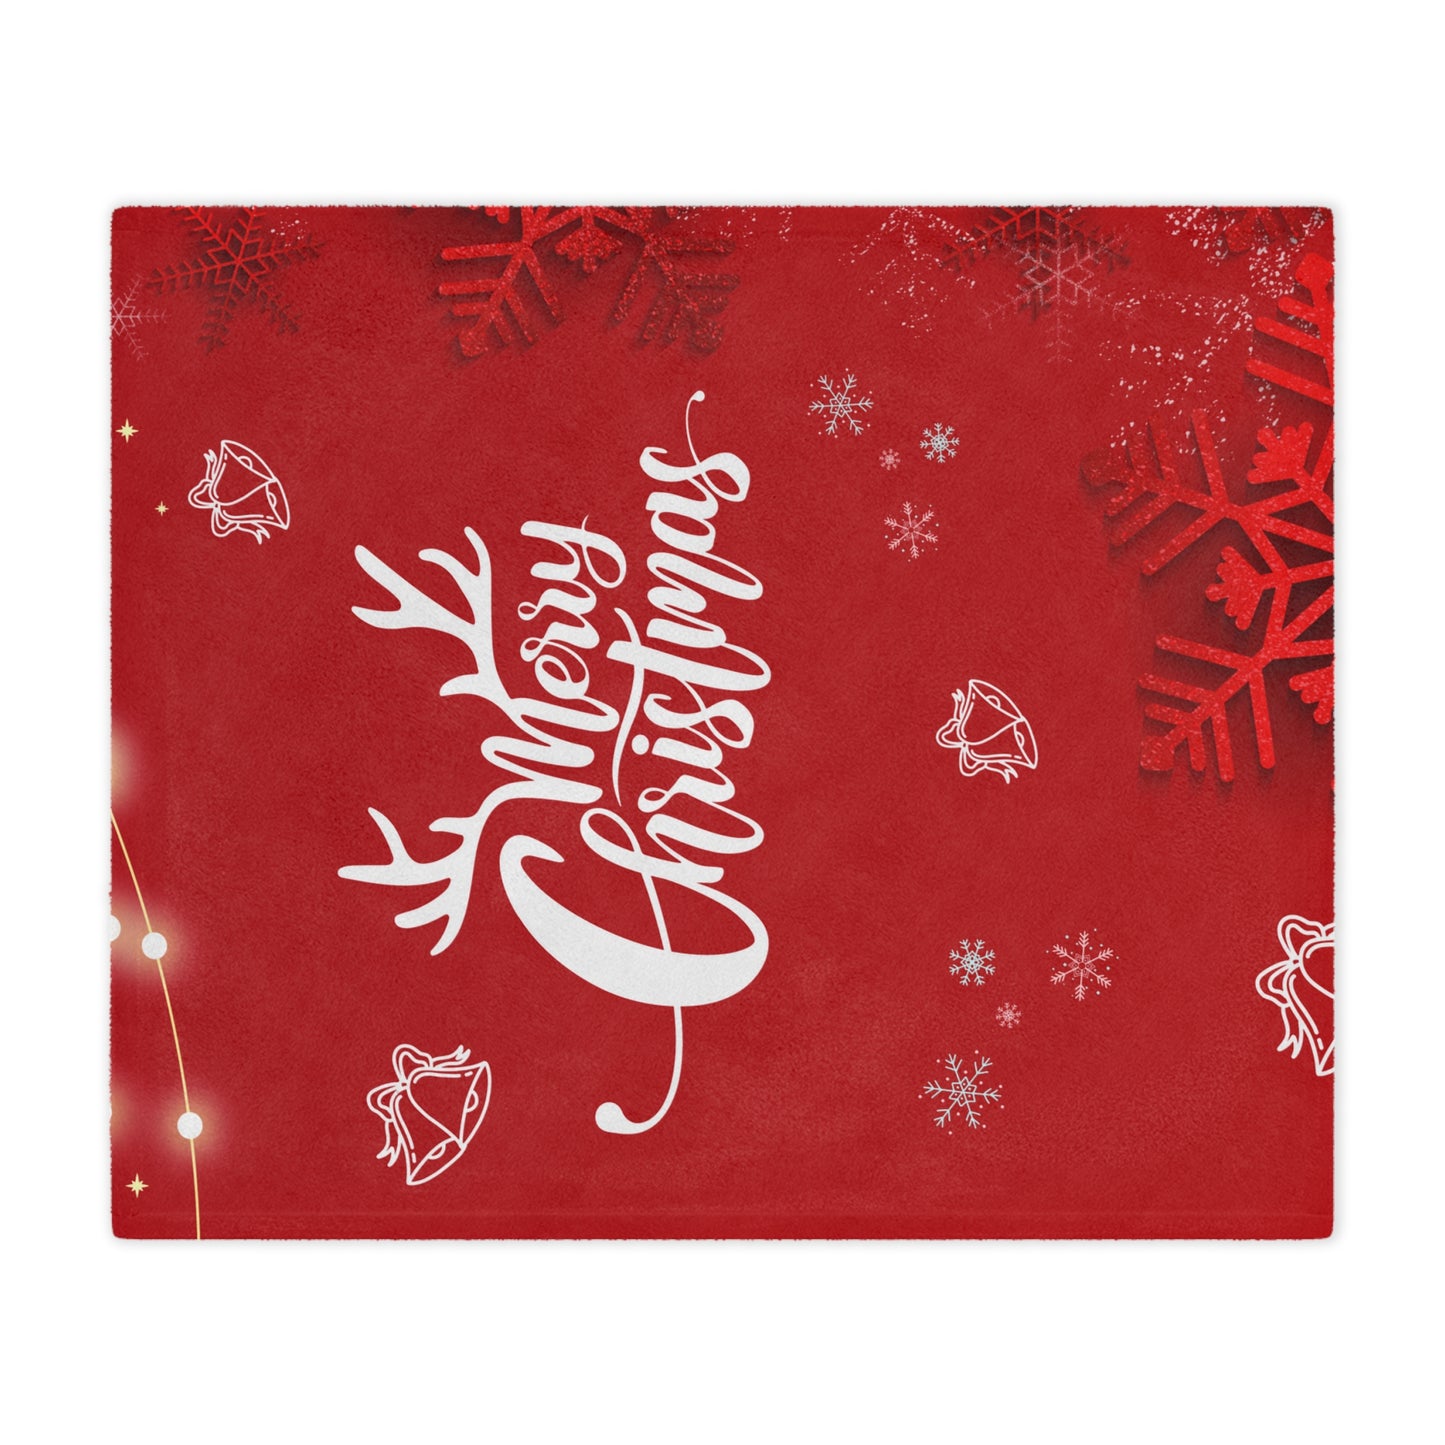 Merry Christmas in Red, Printed Velveteen Minky Blanket